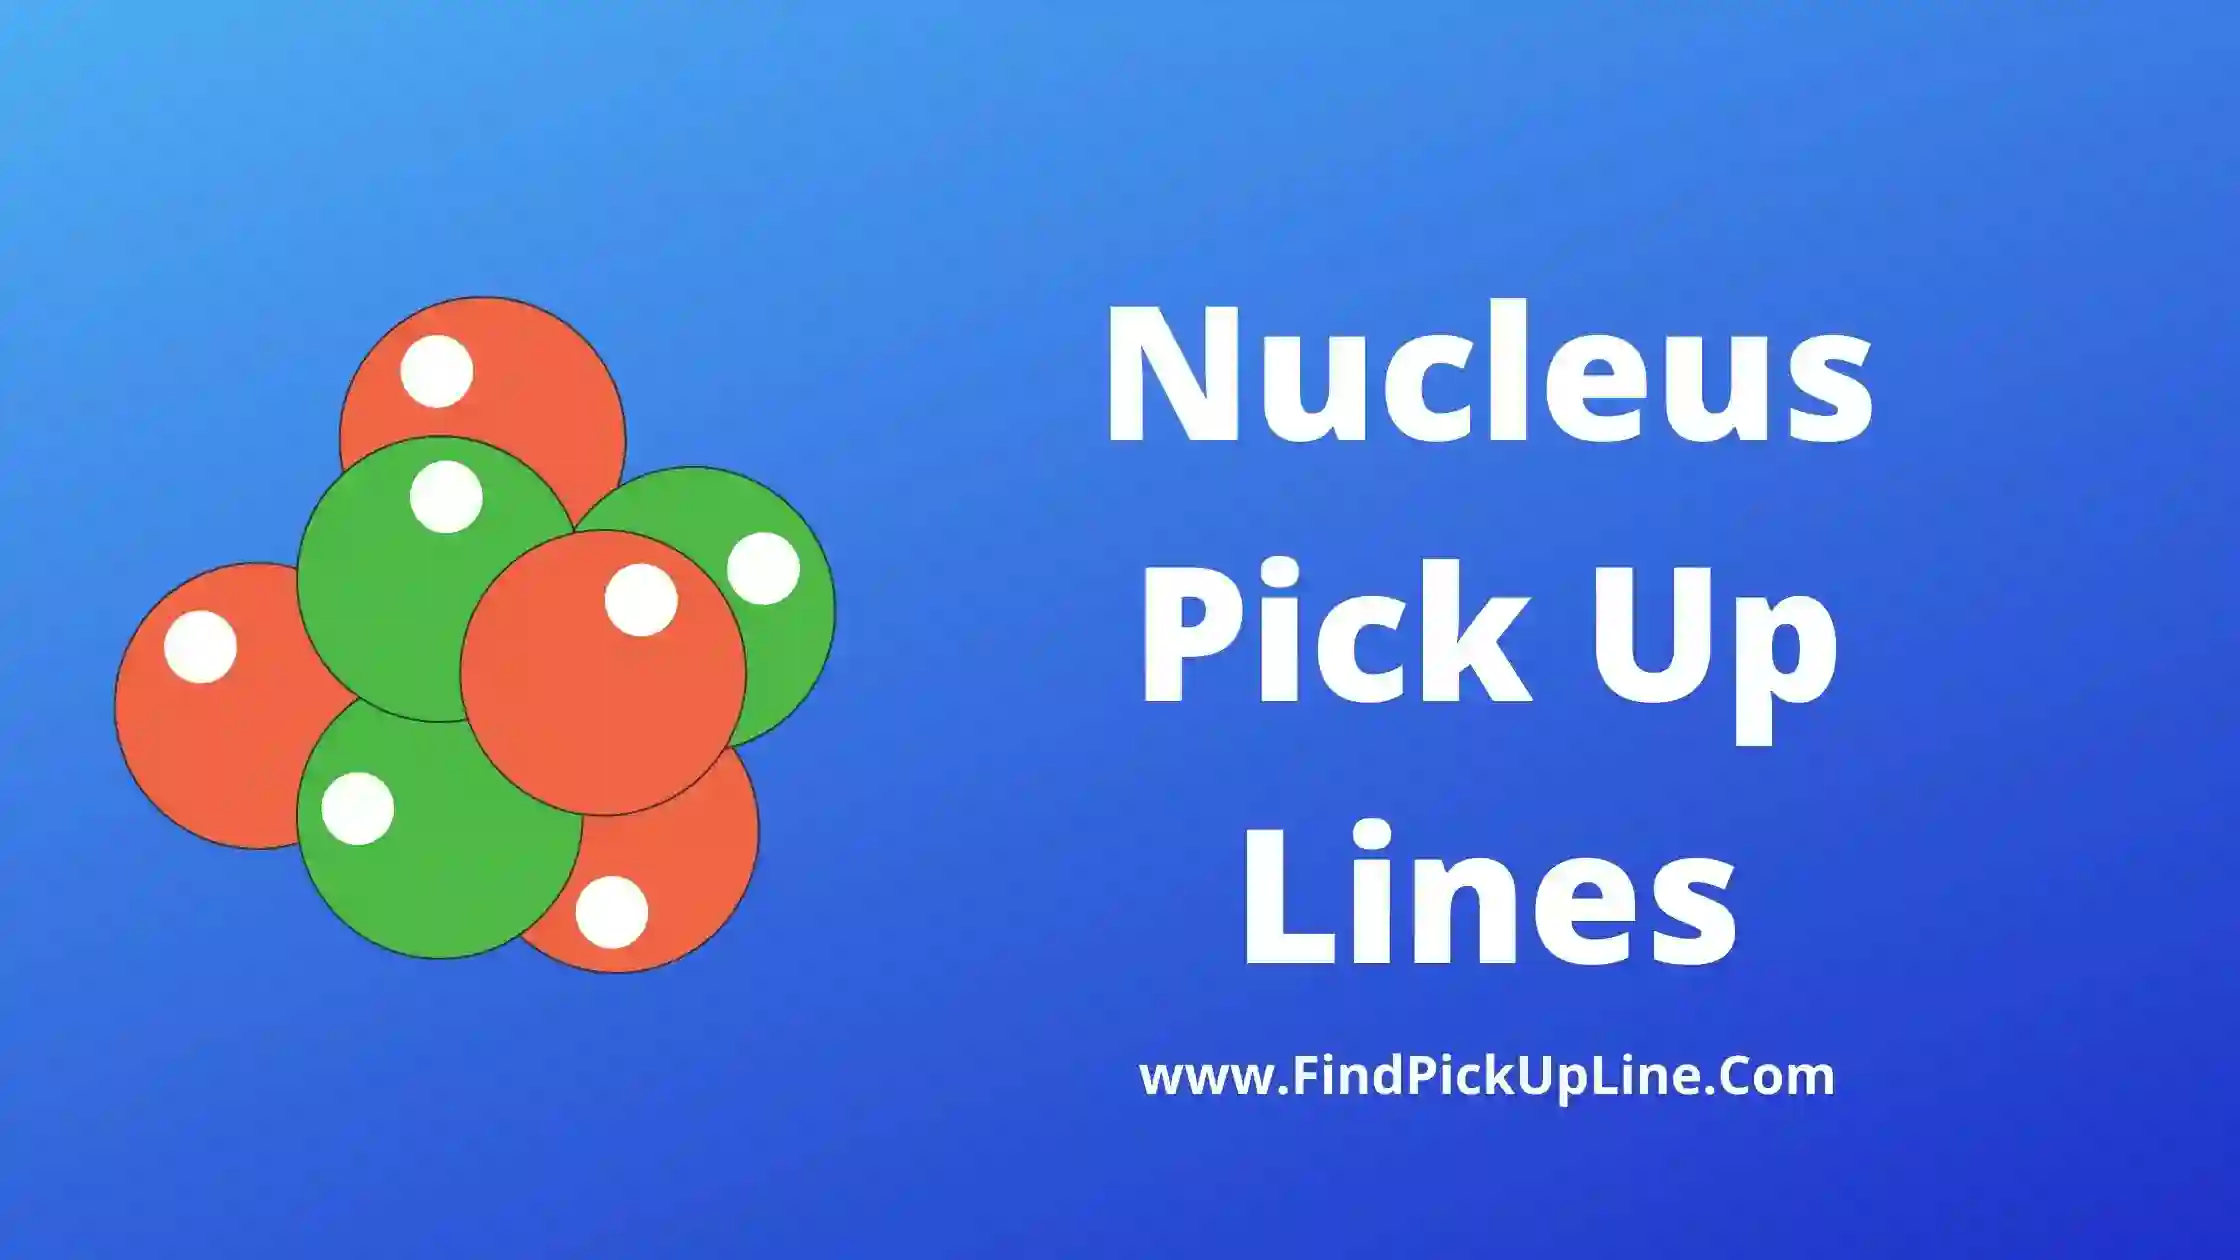 Nucleus Pick Up Lines